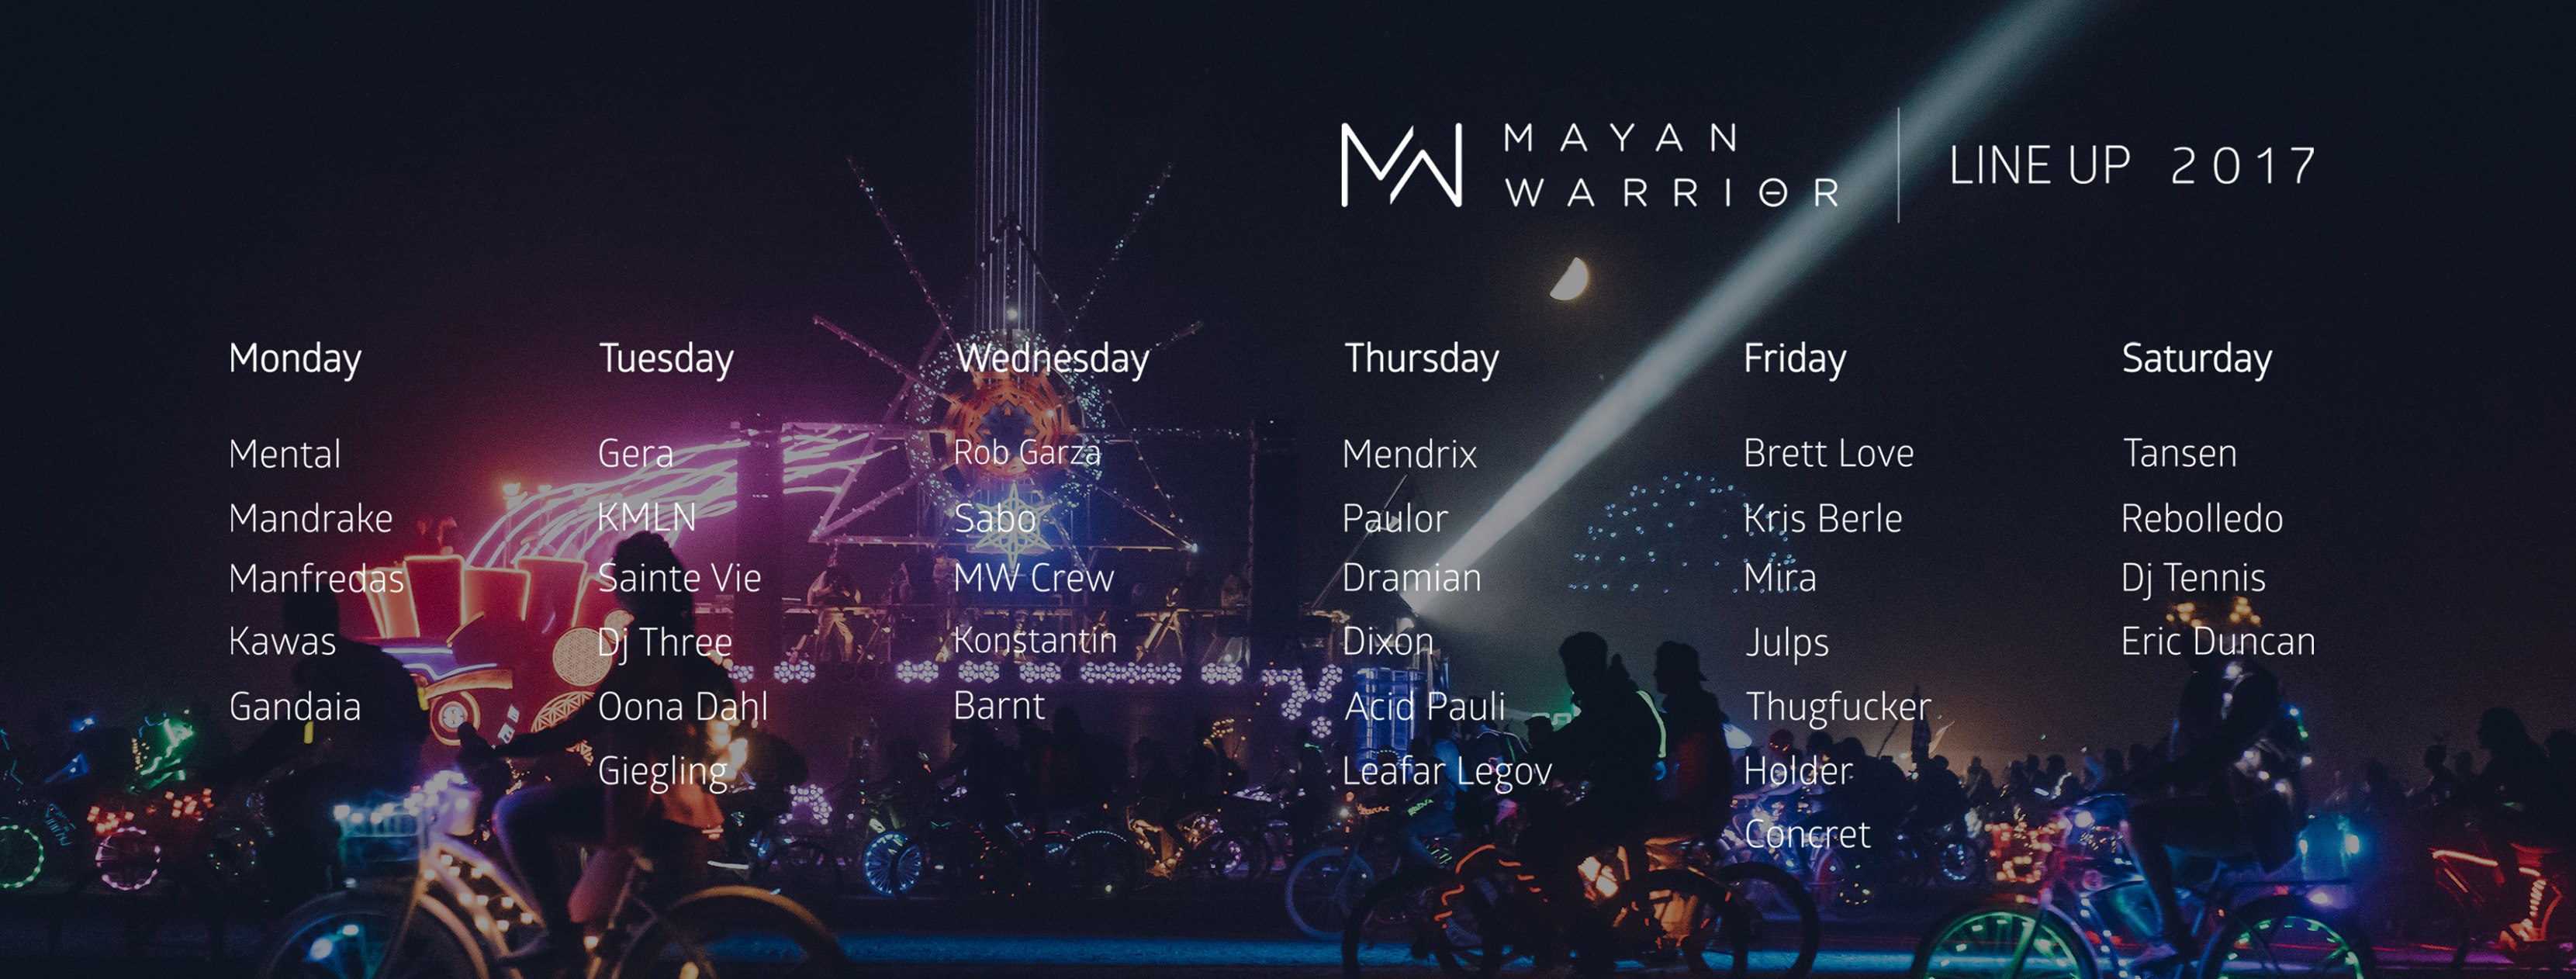 Line Up Mayan Warrior 2017